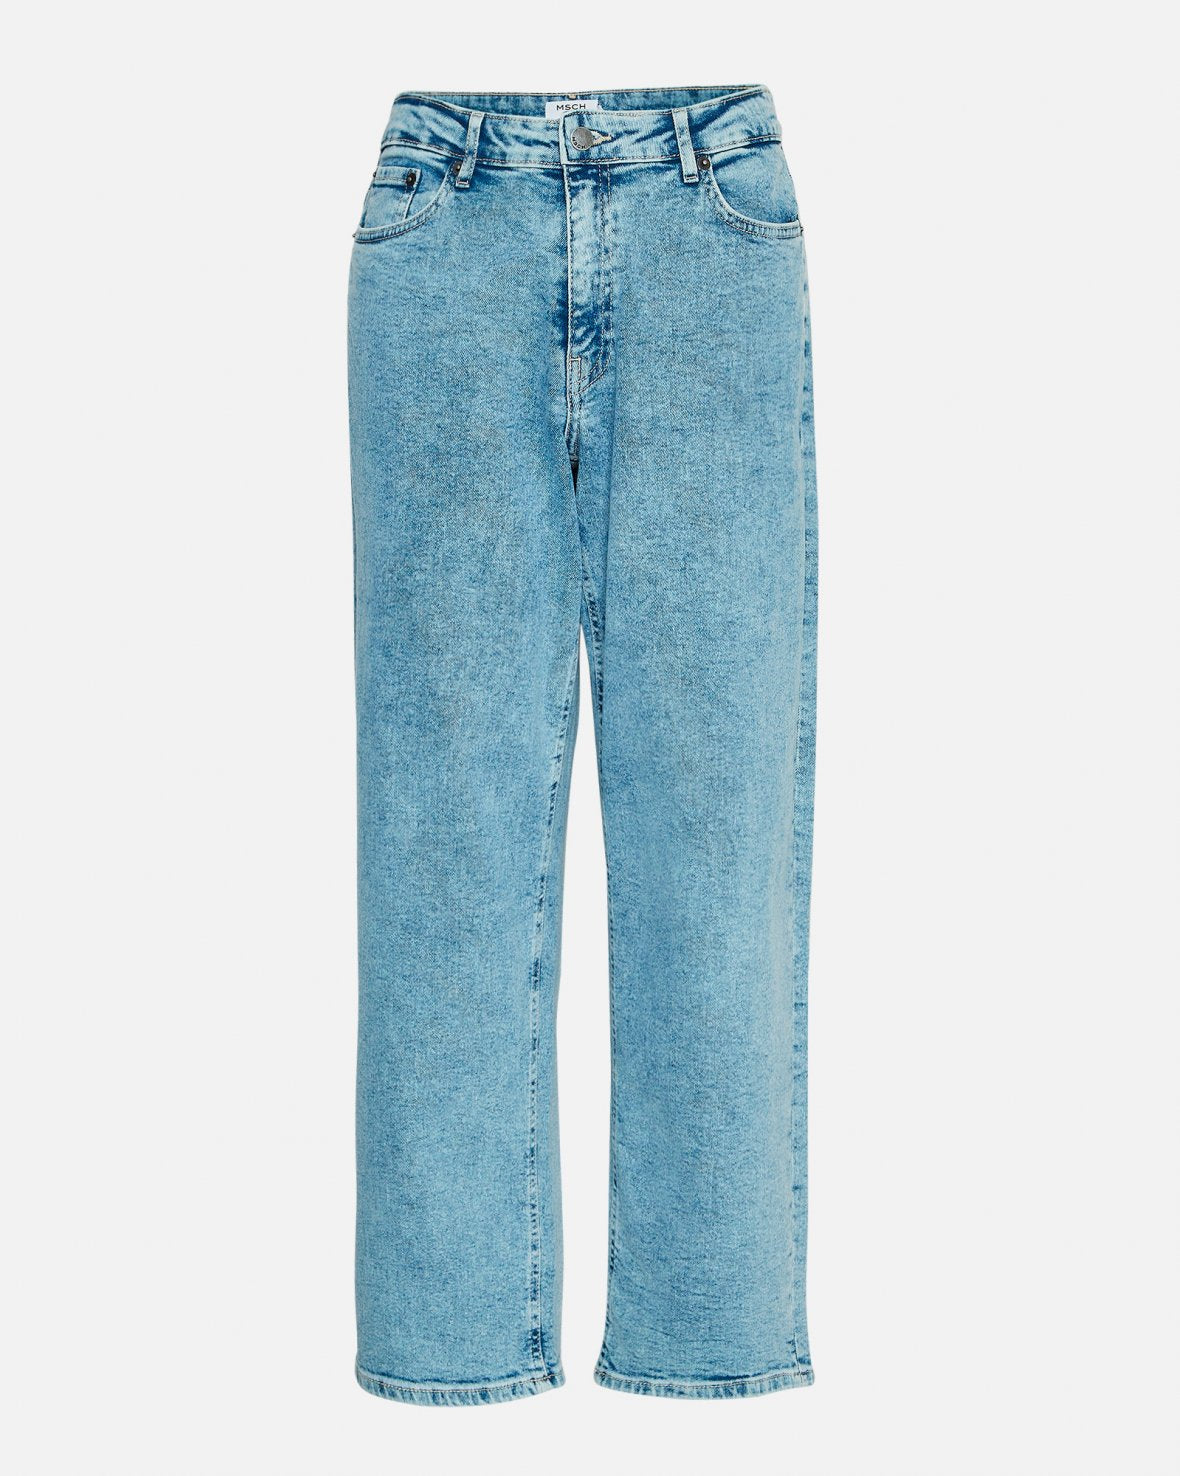 MSCH Eike Rikka Ankle Jeans in Light Blue Wash